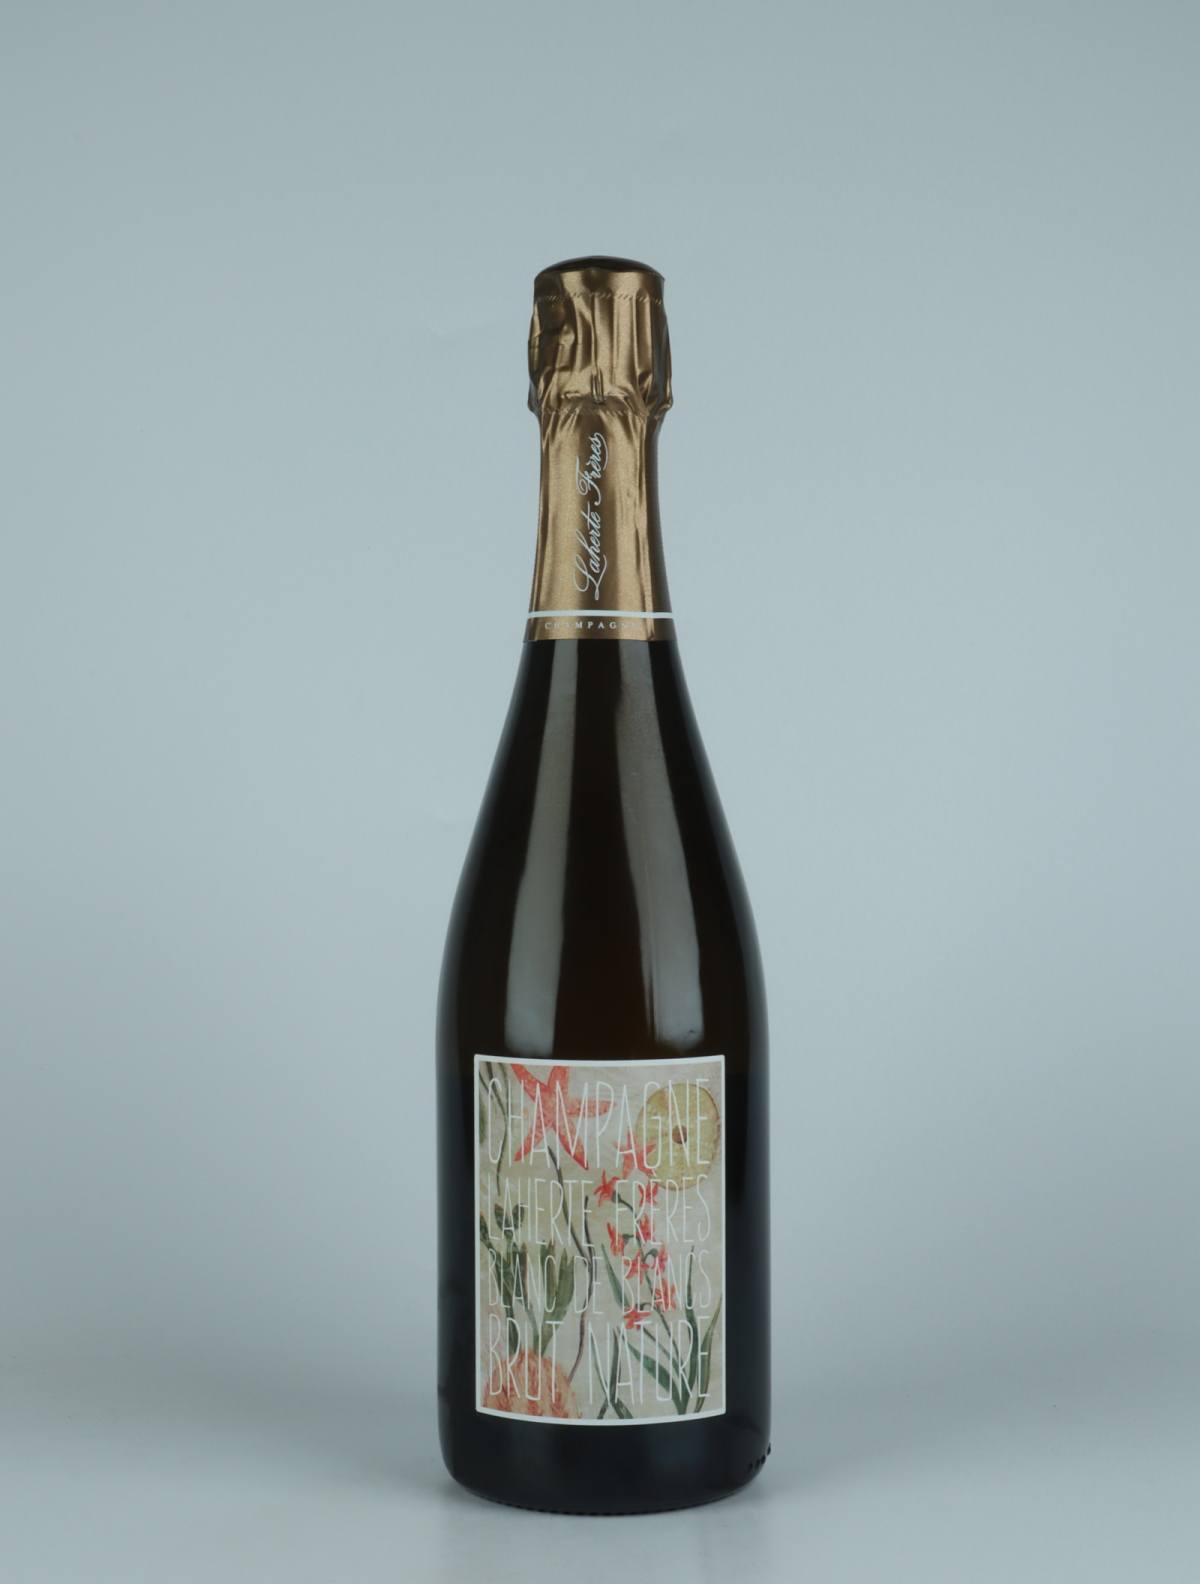 A bottle N.V. Blanc de Blancs - Brut Nature Sparkling from Laherte Frères, Champagne in France